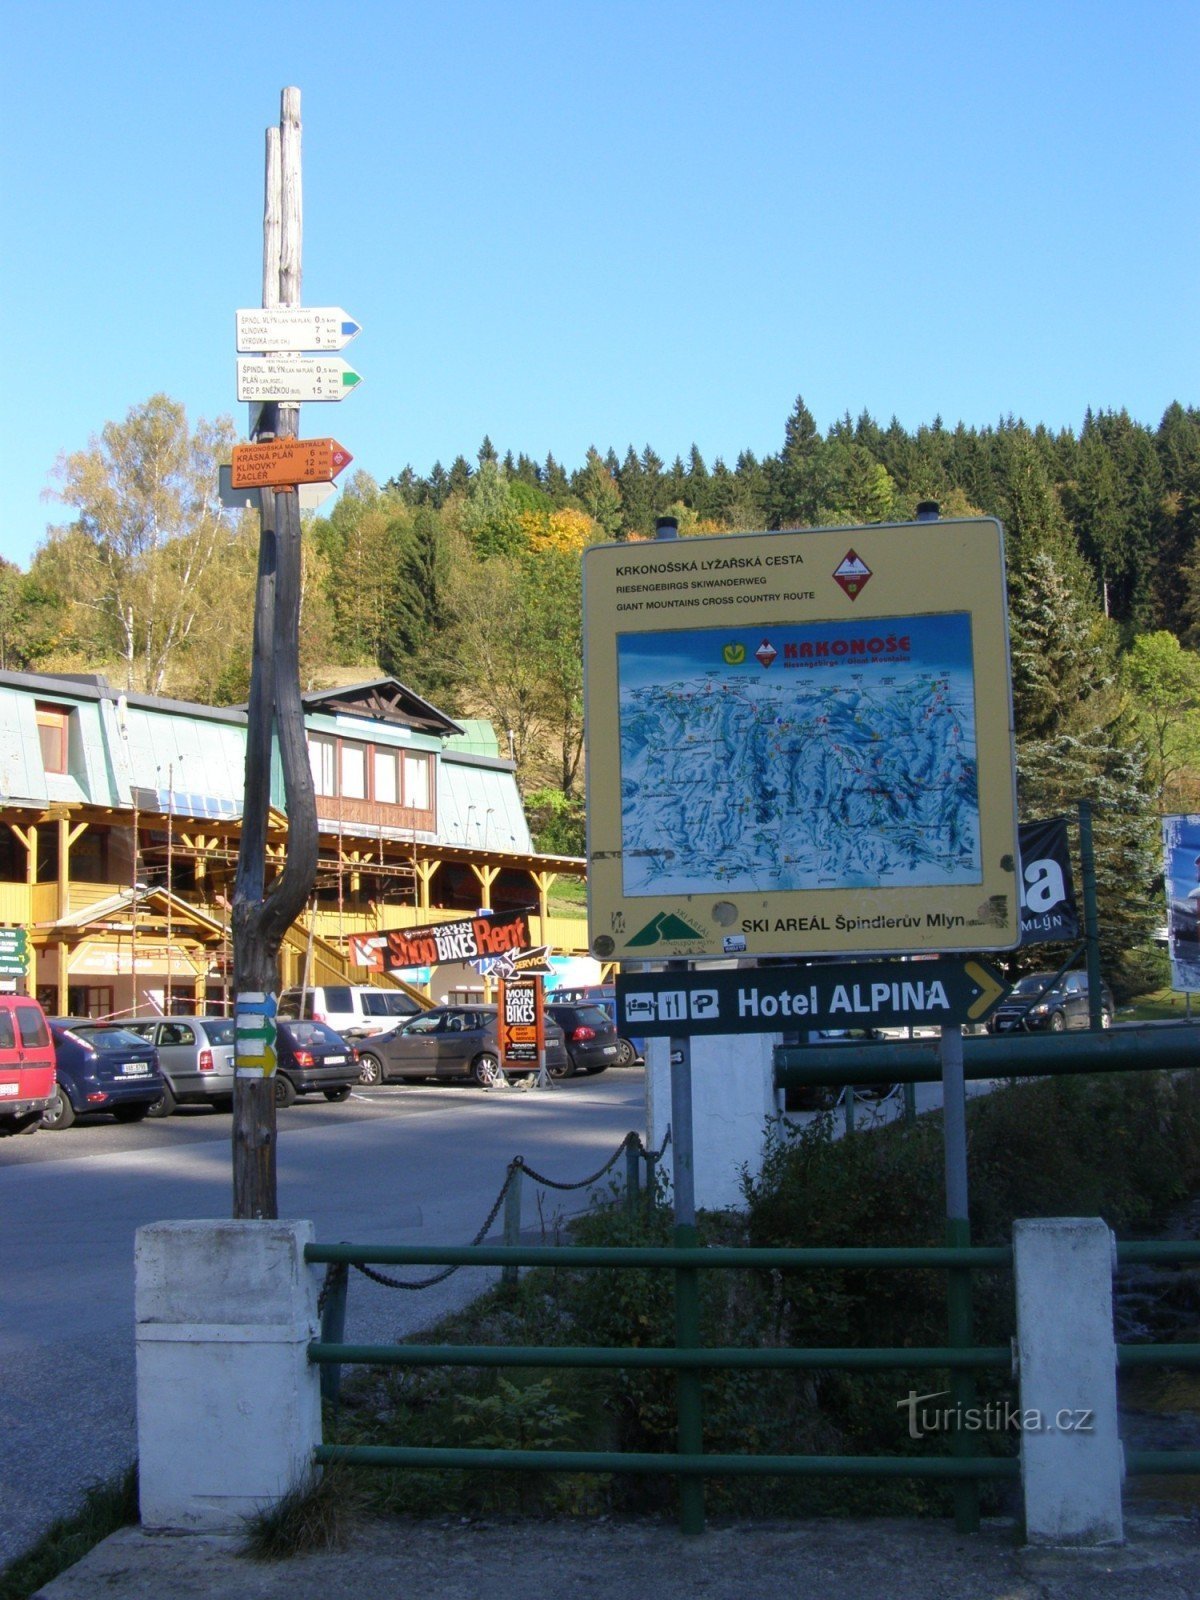 Carrefour touristique de Špindlerův Mlýn - au centre d'information